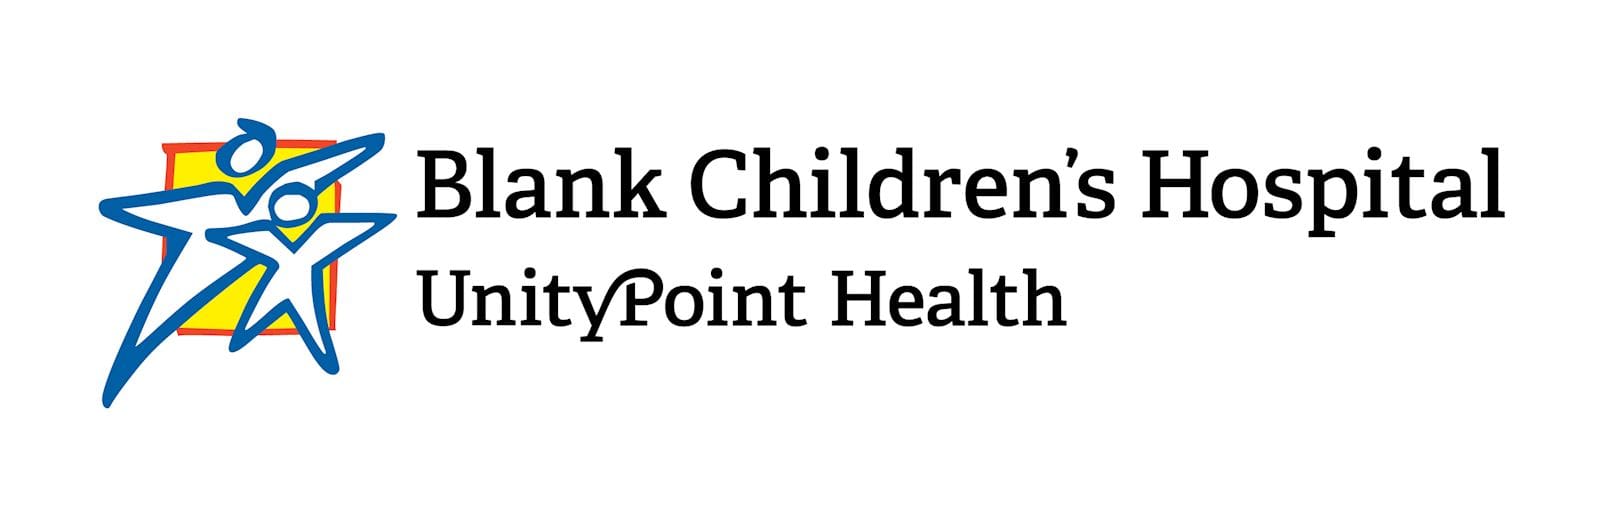 blank children's hospital logo